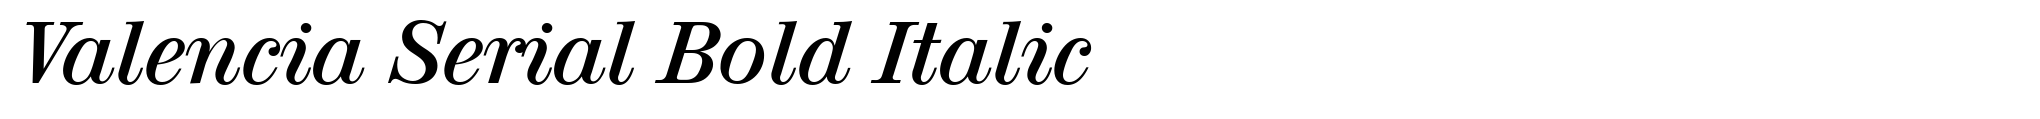 Valencia Serial Bold Italic image